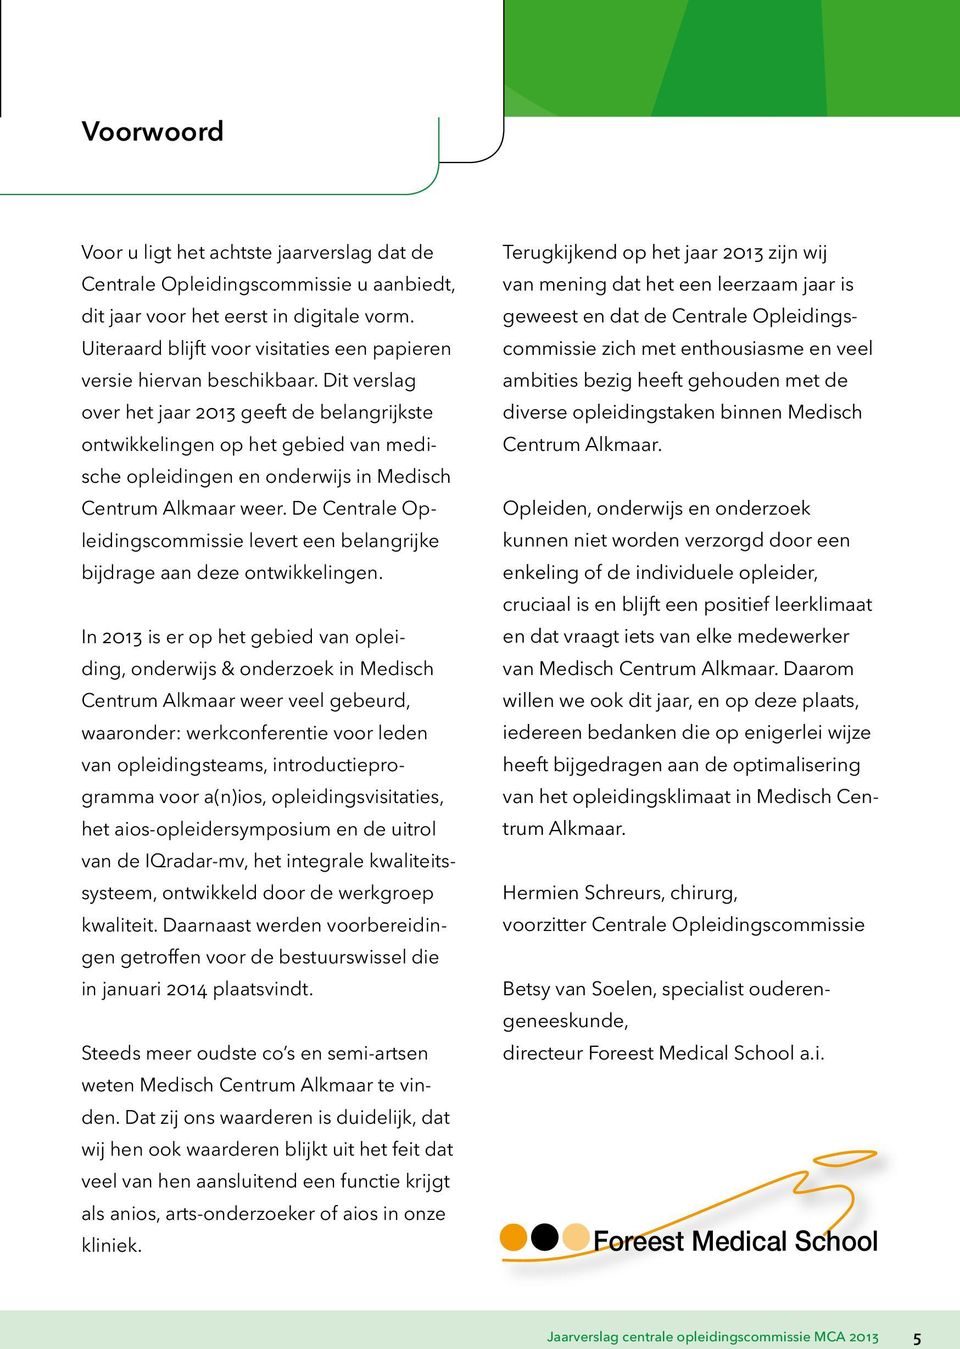 Dit verslag over het jaar 2013 geeft de belangrijkste ontwikkelingen op het gebied van medische opleidingen en onderwijs in Medisch Centrum Alkmaar weer.